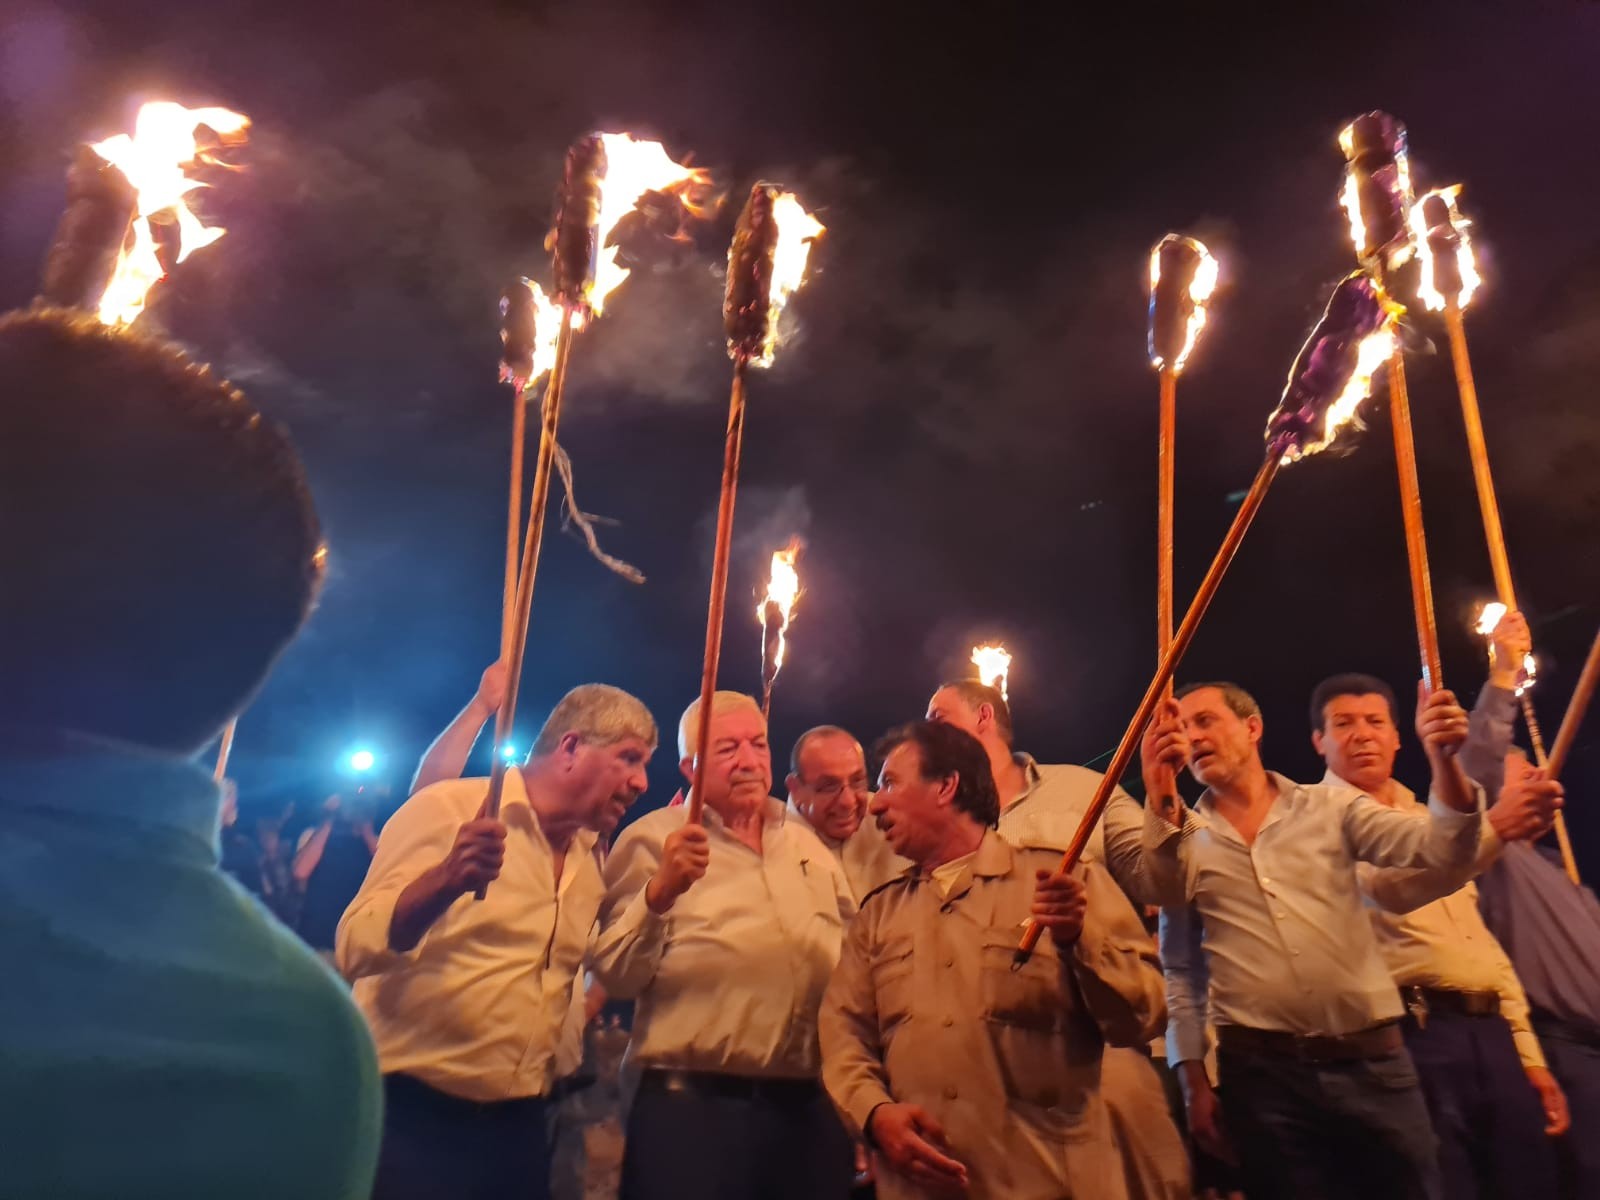 بالفيديو والصور: العالول يُشارك بفعاليات "الإرباك الليلي" في بلدة بيتا